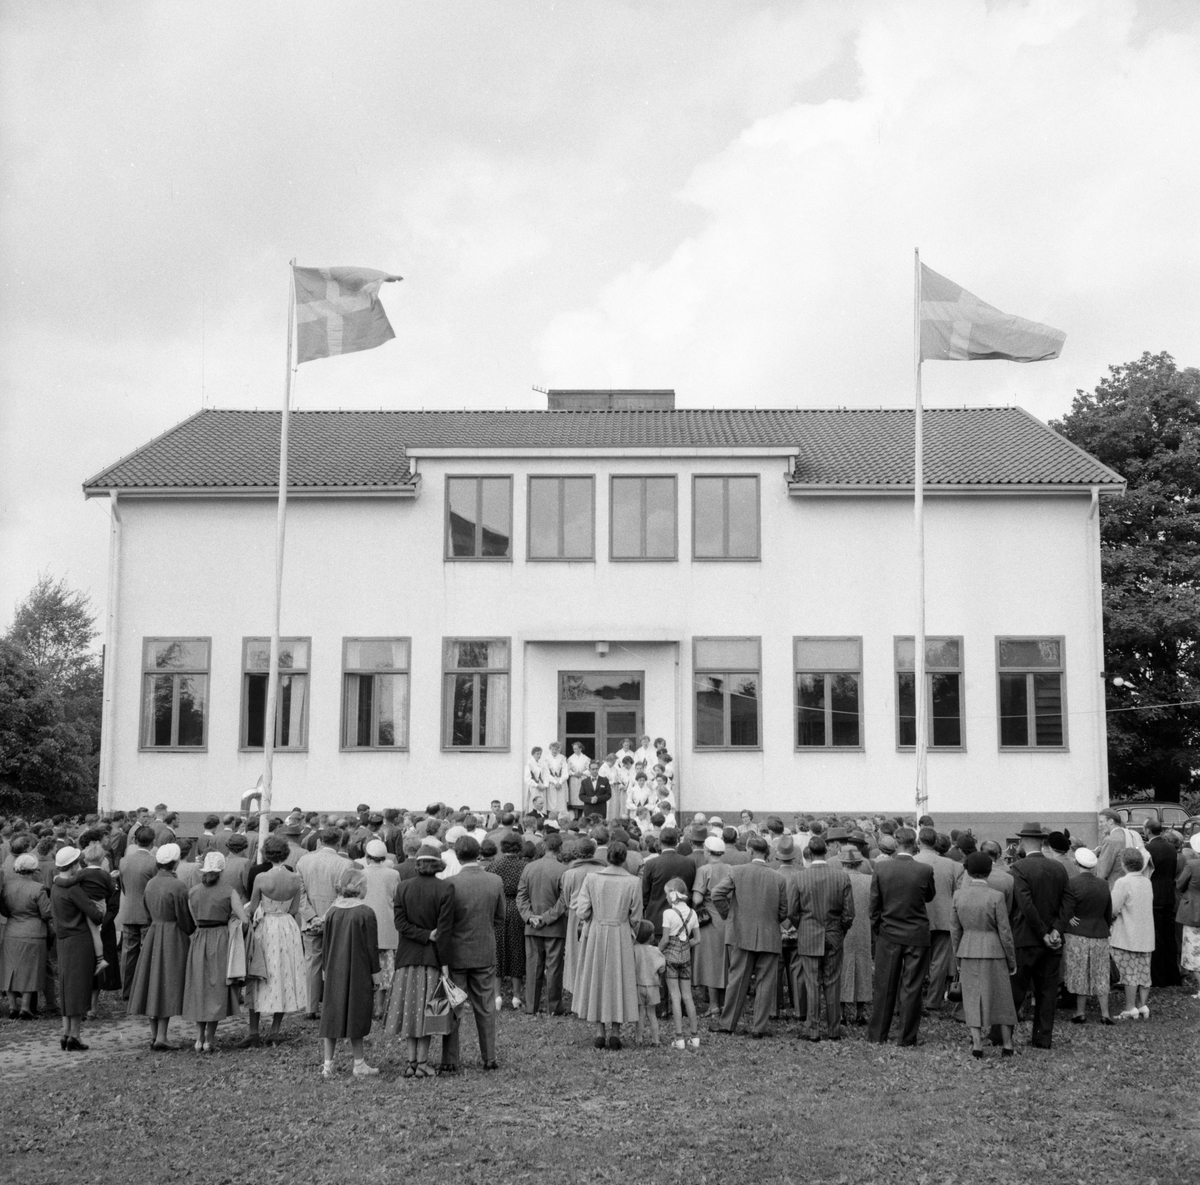 Skolavslutning vid enhetsskolan i Veta 1954. Enhetsskolan var den skolform som föregick grundskolan. Den infördes ojämnt i Sverige från 1946 till 1962 då grundskolan började introduceras och som 1972 var införd i hela Sverige. Det innebar att folkskolan var helt avvecklad.